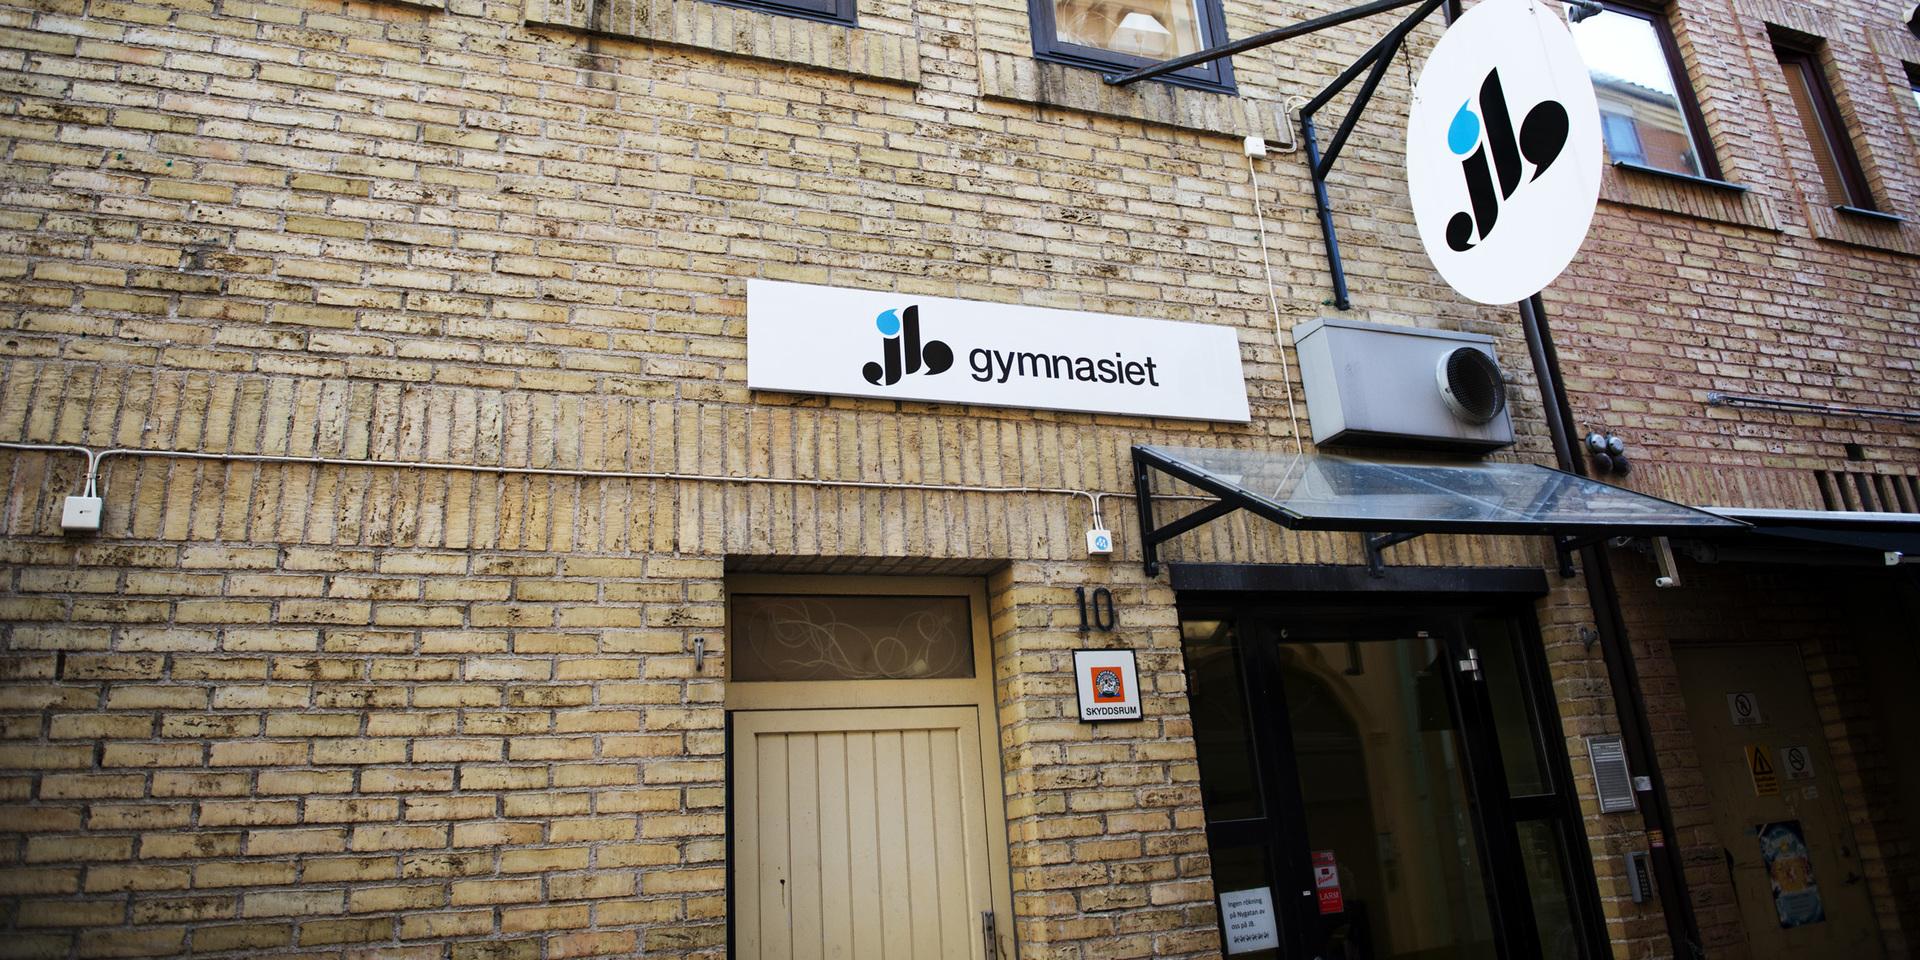 Stängt var det här. 2013 lades JB-gymnasiet i Halmstad ned efter att skolans ägare försatts i konkurs.